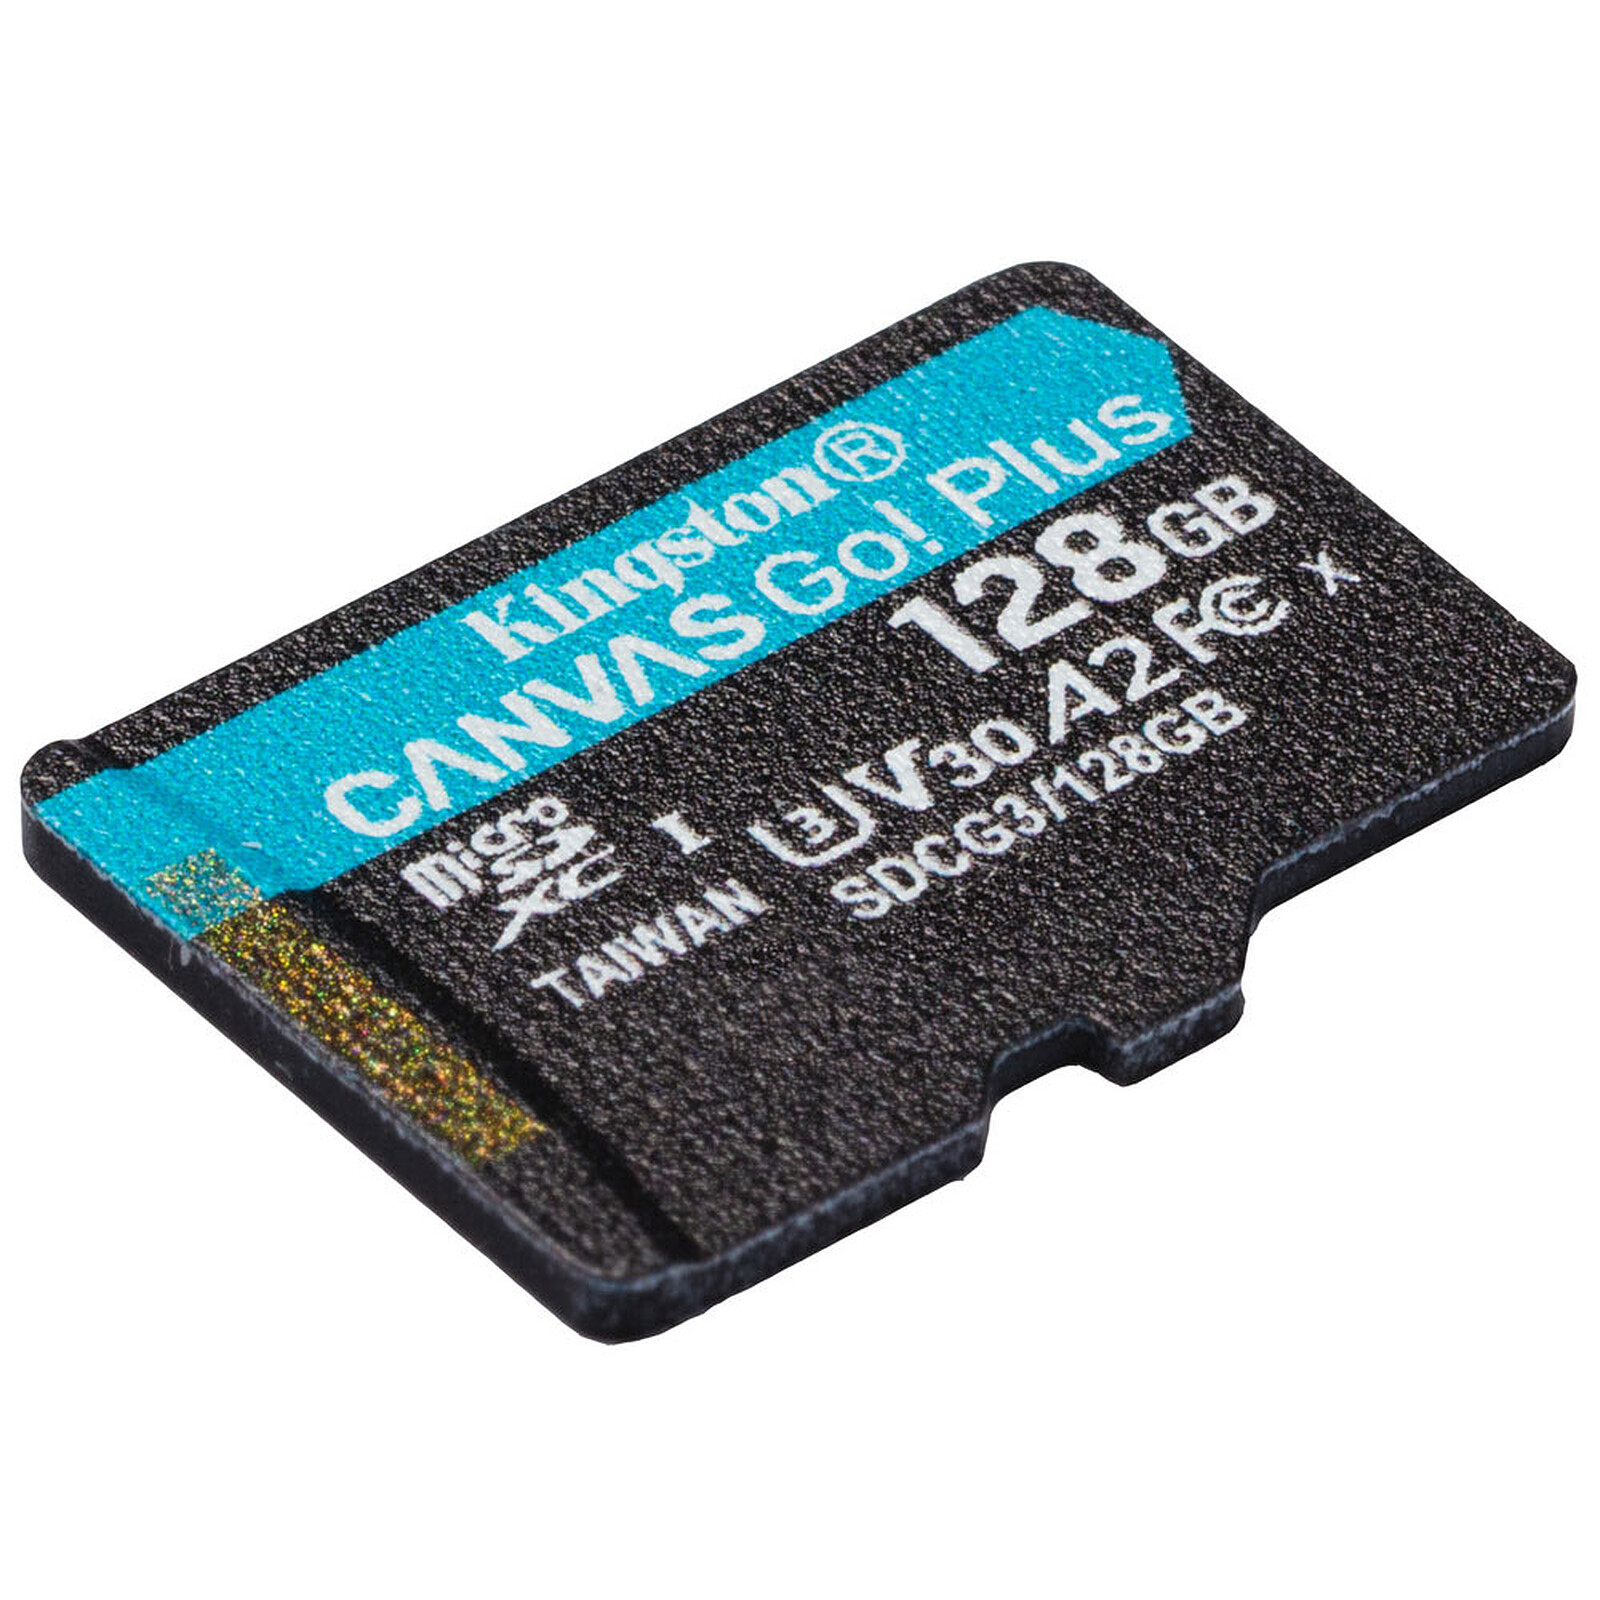 Carte microSD U3 de qualité industrielle de 128 Go